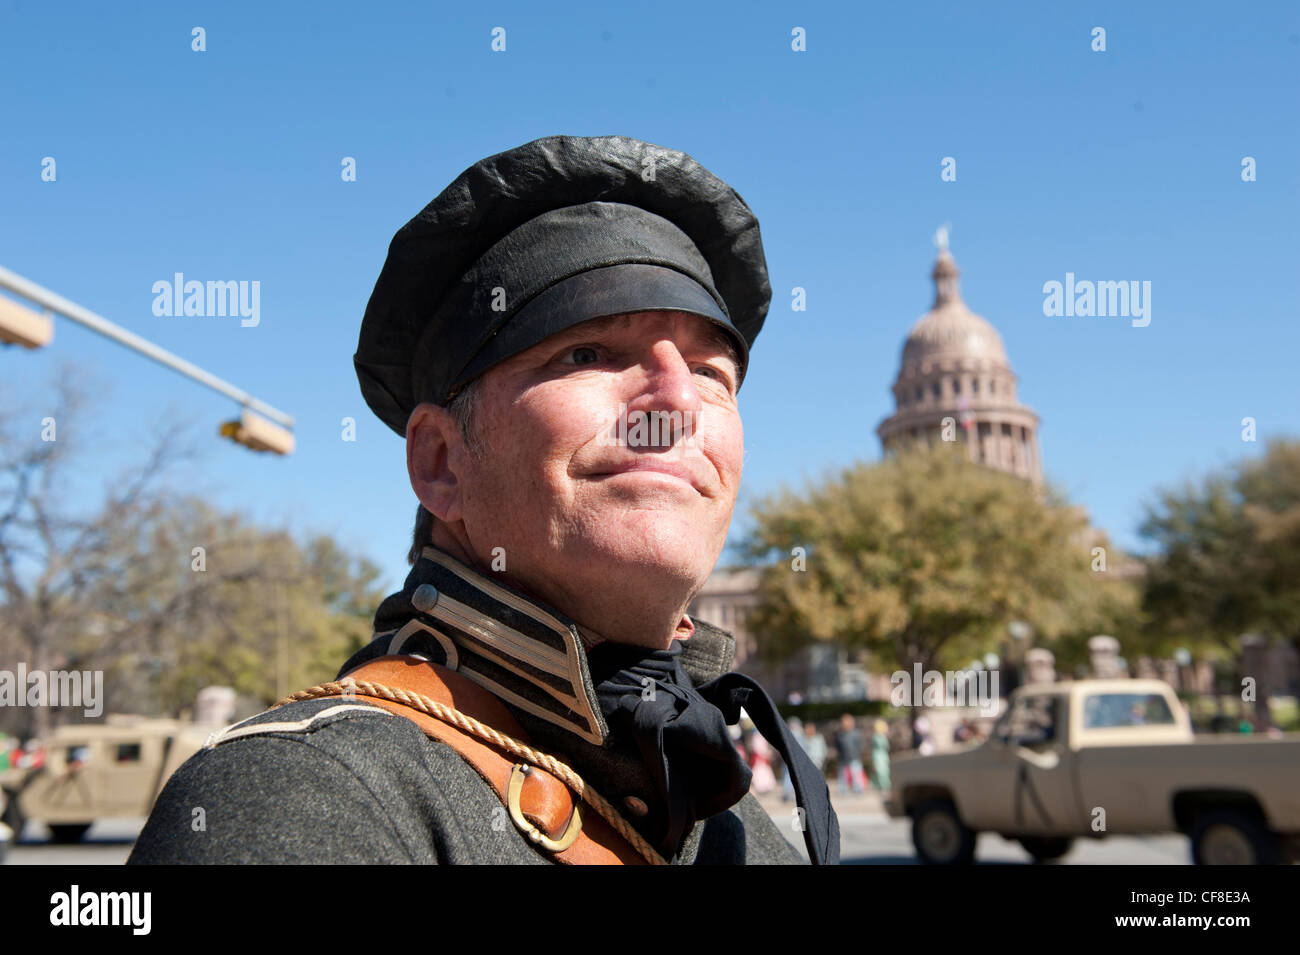 John Tyler, de Austin, Texas, se vistió como un soldado, pausas en el capitolio estatal de Texas en el día de la independencia en marzo 2nd, 2012 Foto de stock